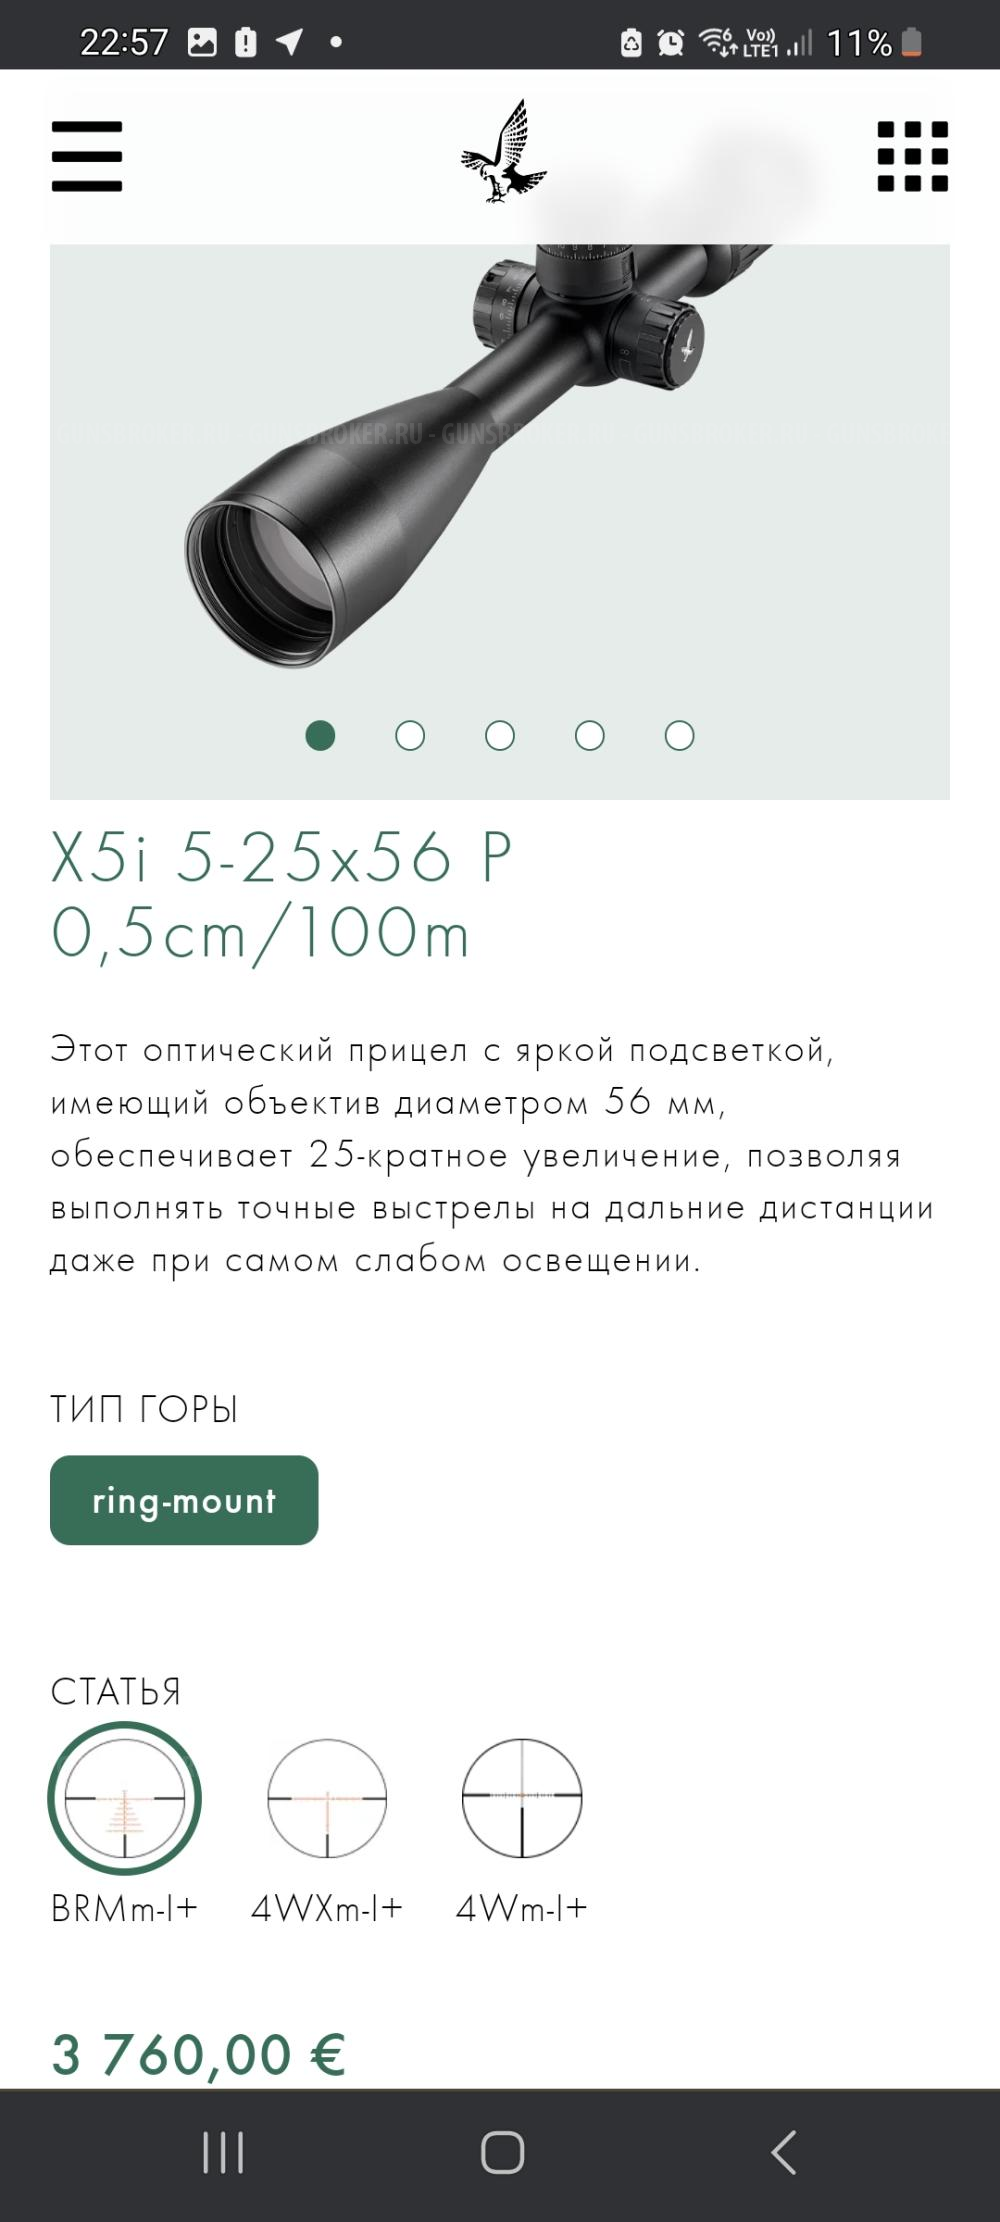 Оптический прицел Swarovski X5i 5-25x56 P L 0.5см/100м с подсветкой (сетка BRMm-I+) 